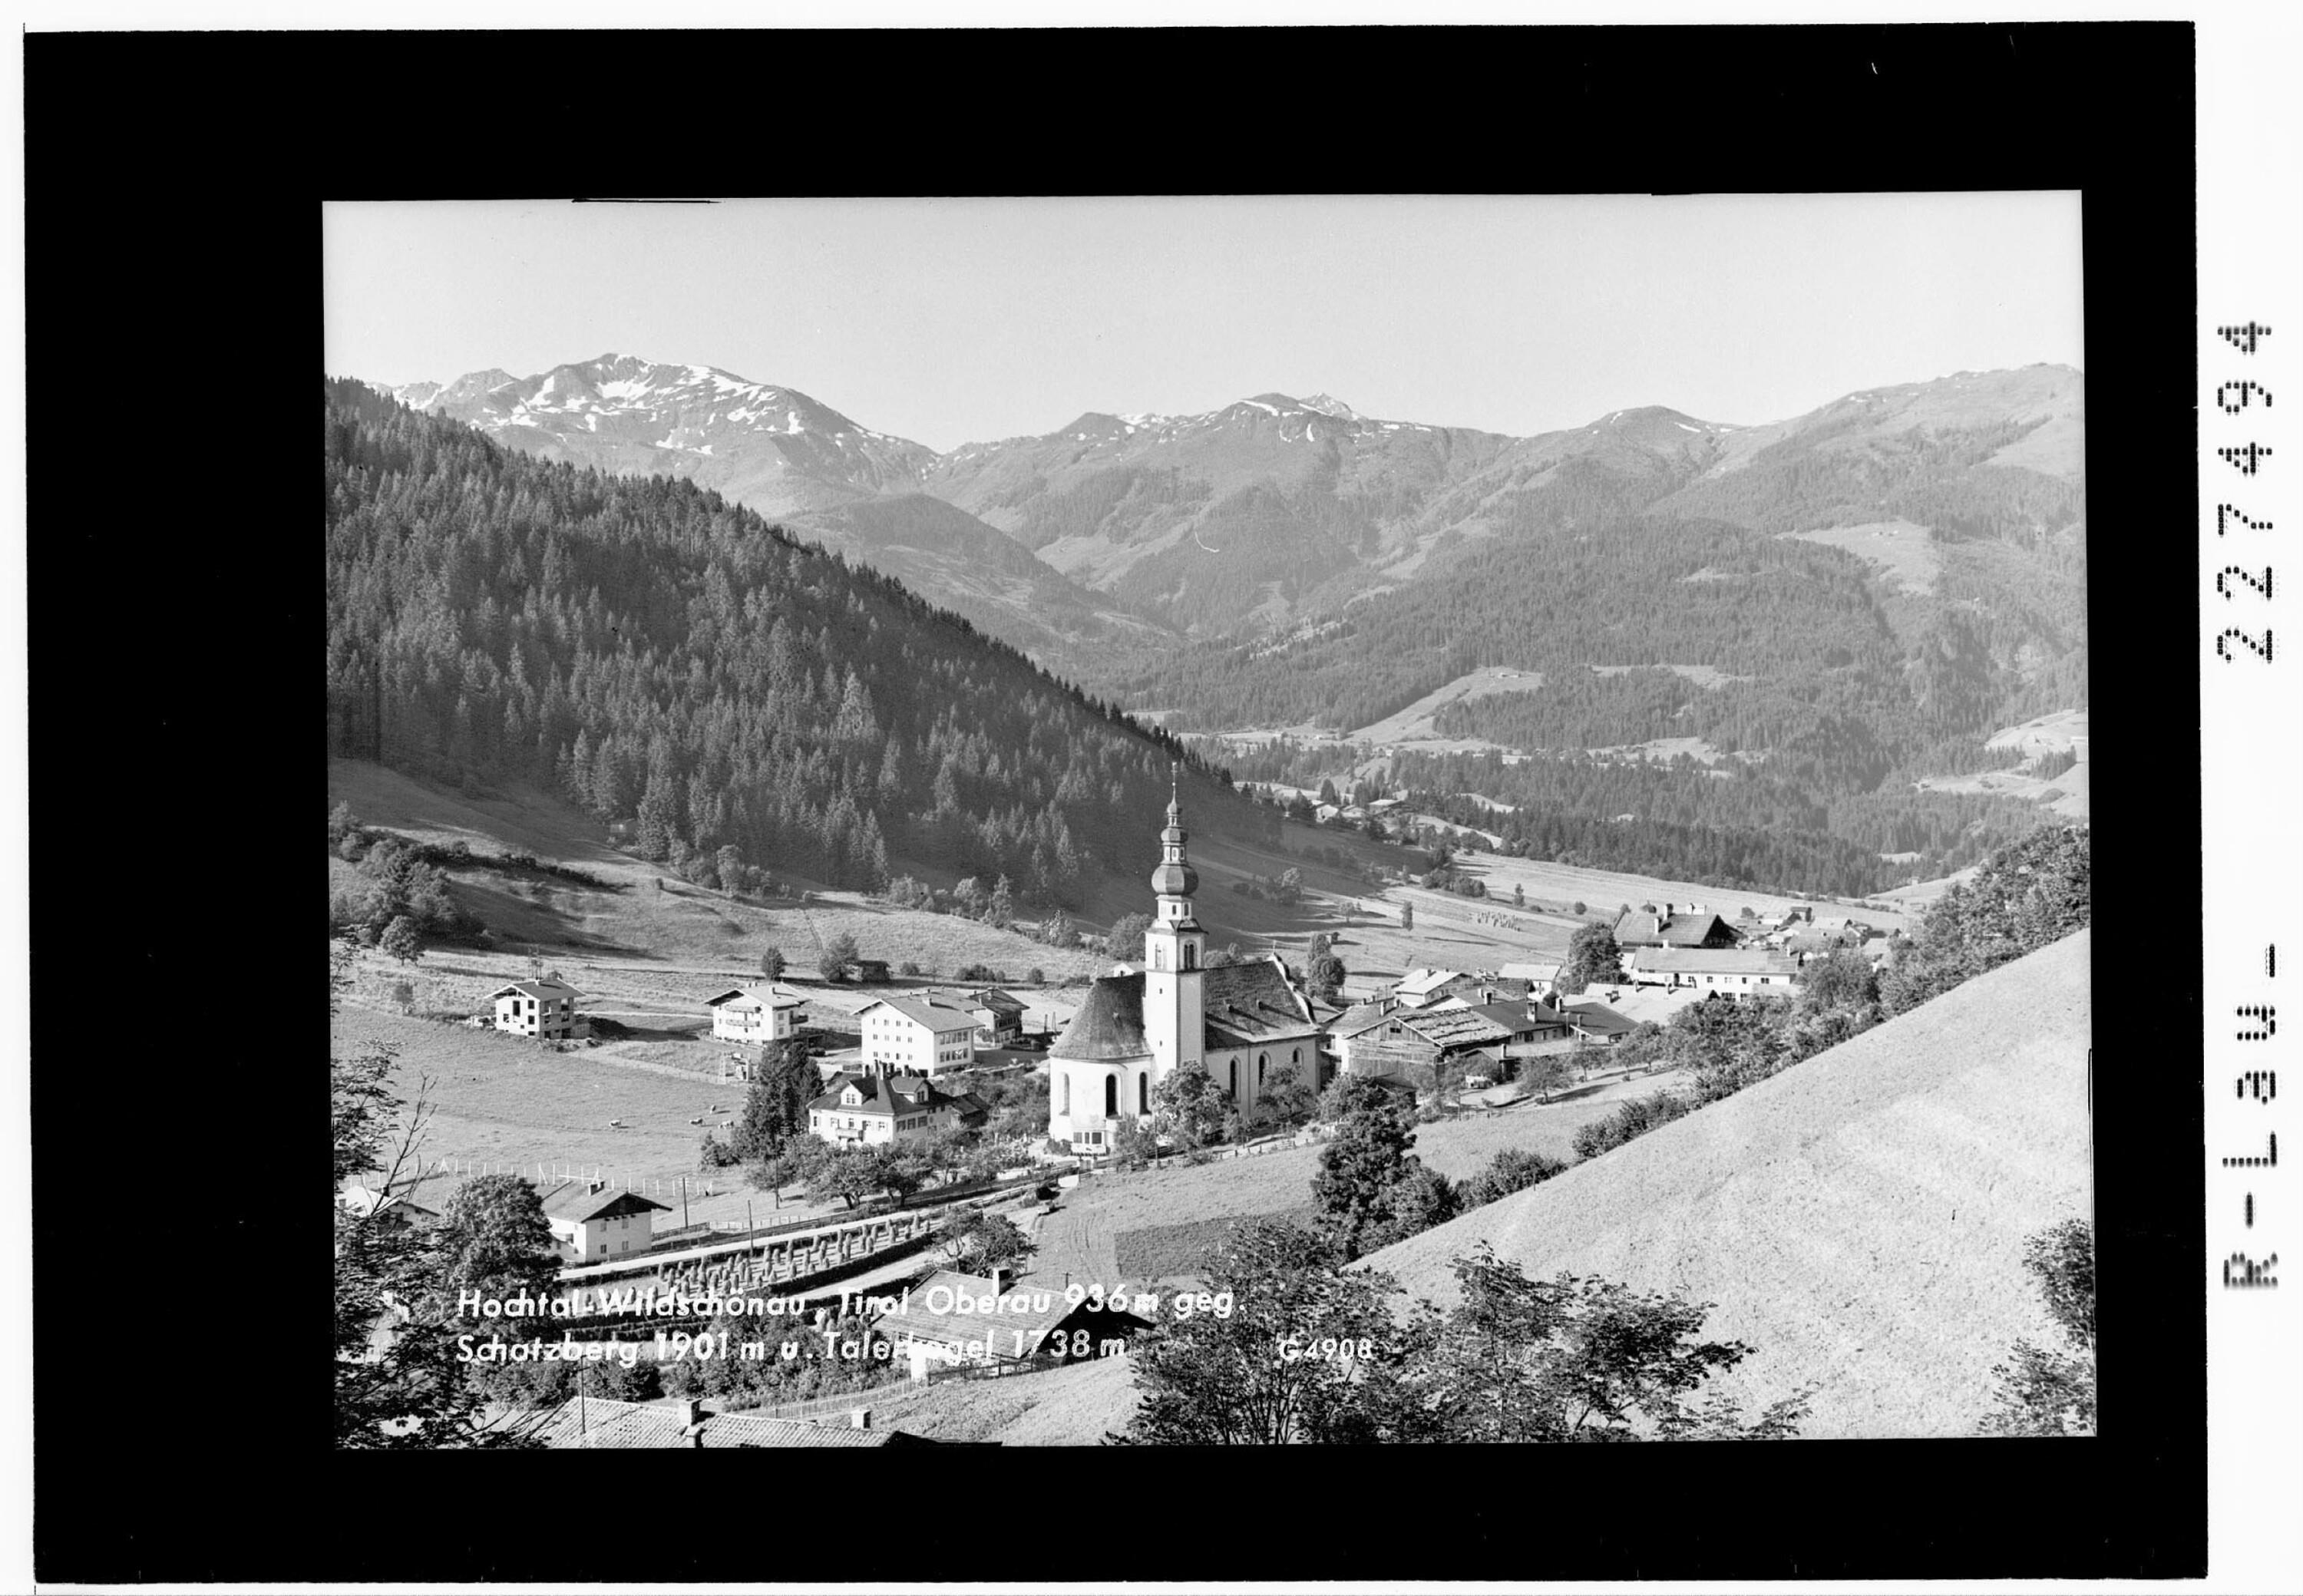 Hochtal Wildschönau / Tirol / Oberau 936 gegen Schatzberg 1901 m und Talerkogel 1738 m></div>


    <hr>
    <div class=